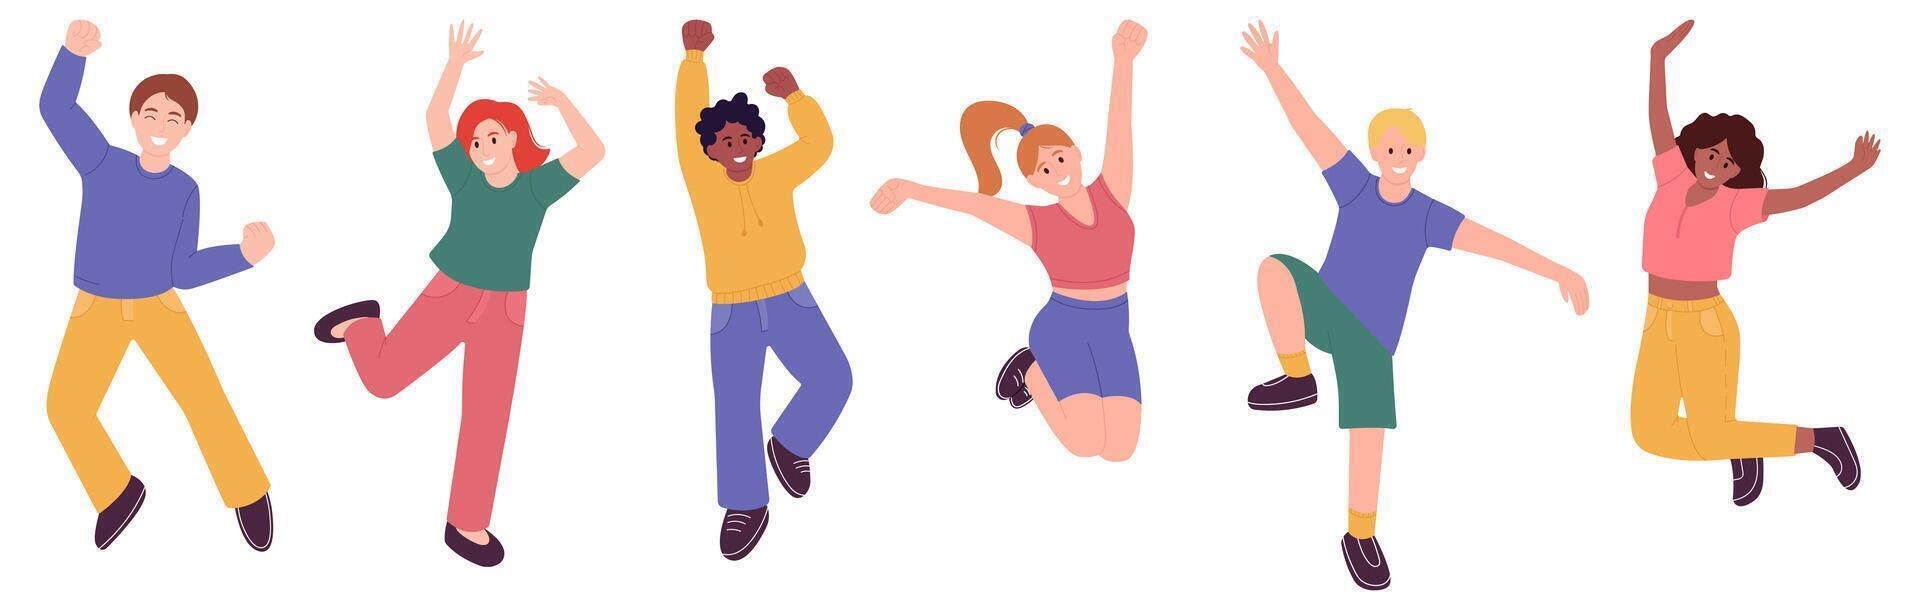 contento persone festeggiare impostare, salto e ridendo uomini e donne, contento emozioni, vettore illustrazione